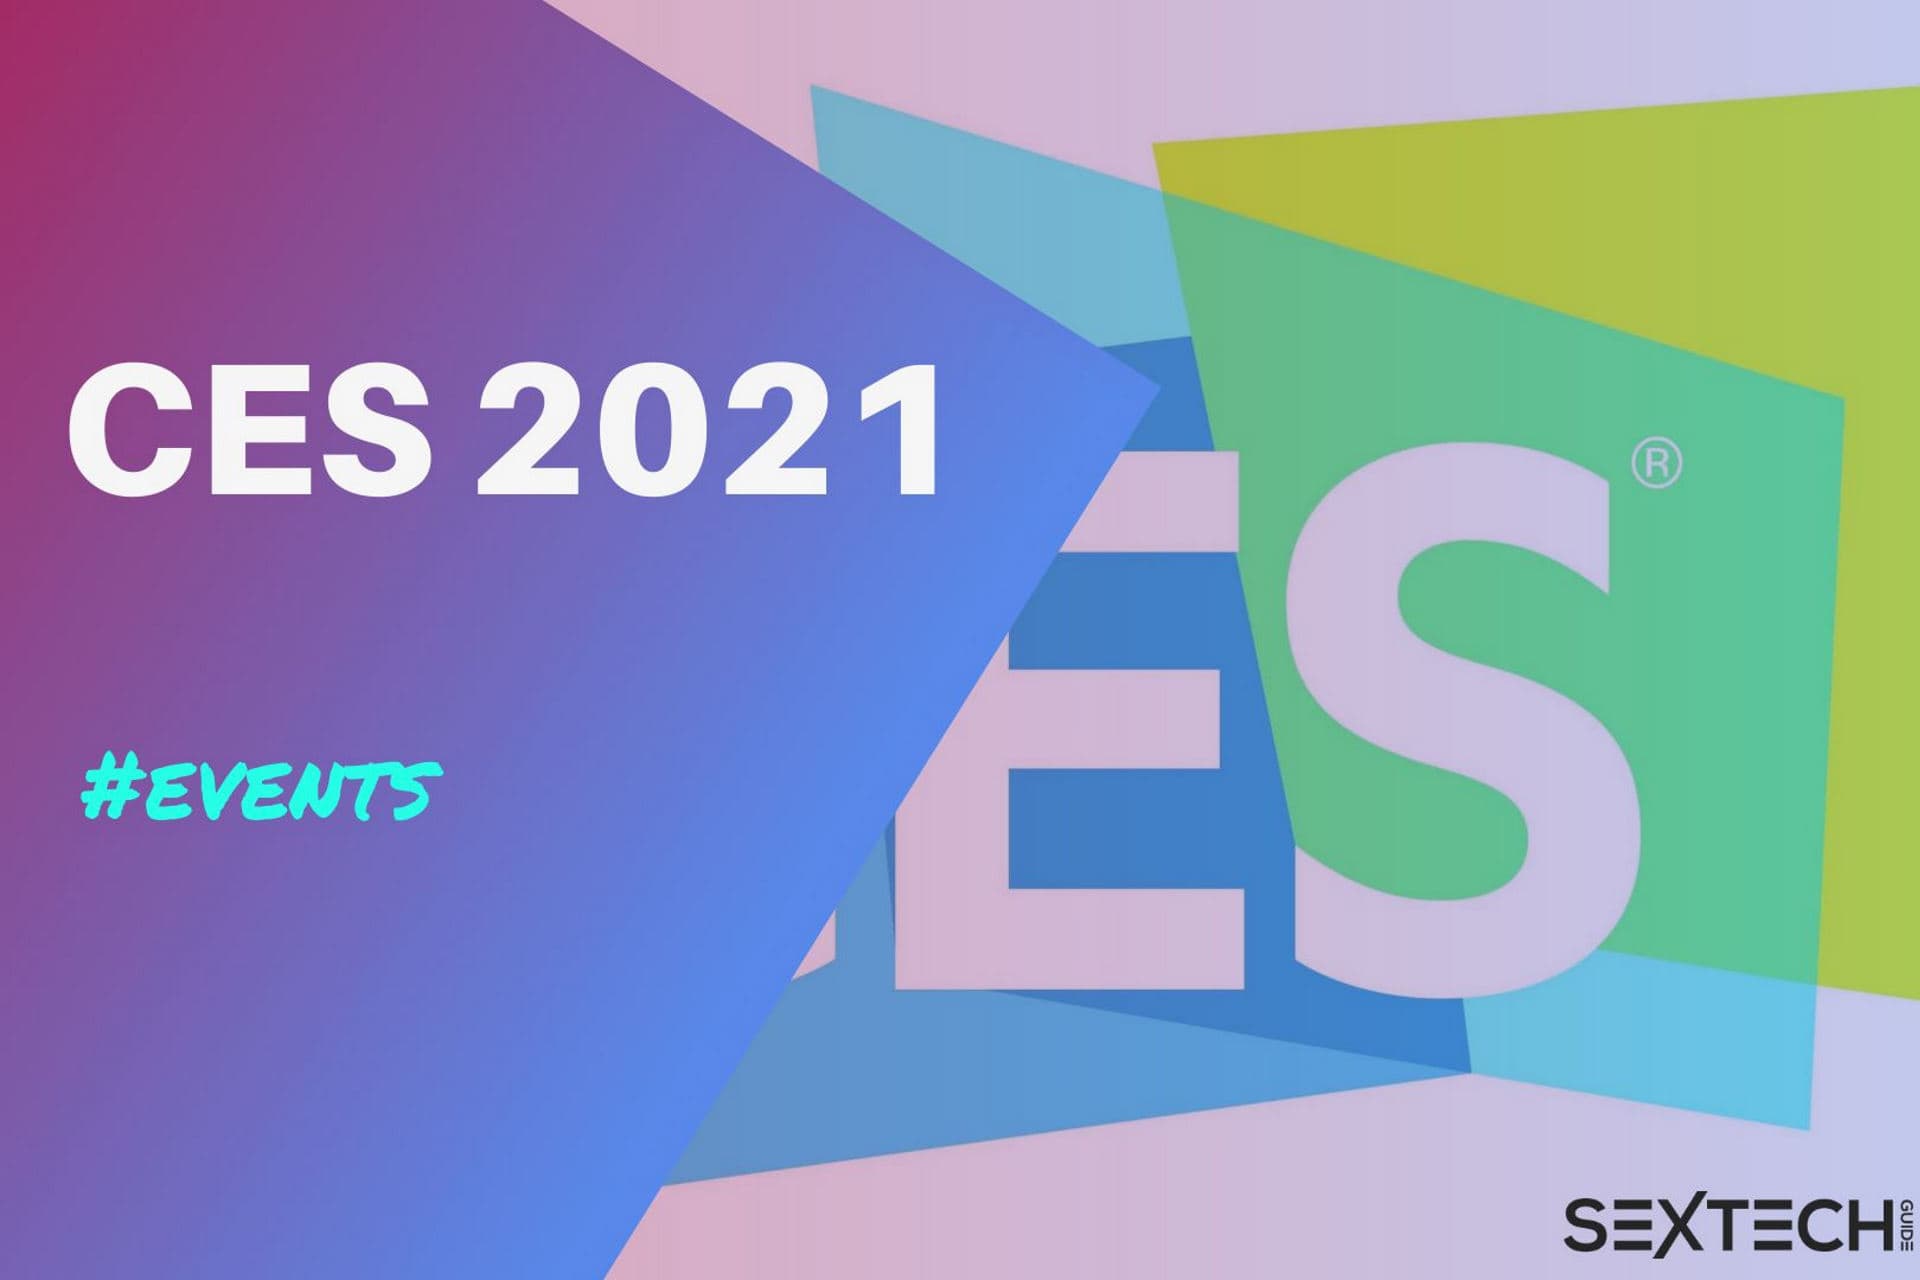 CES 2021 Virtual event